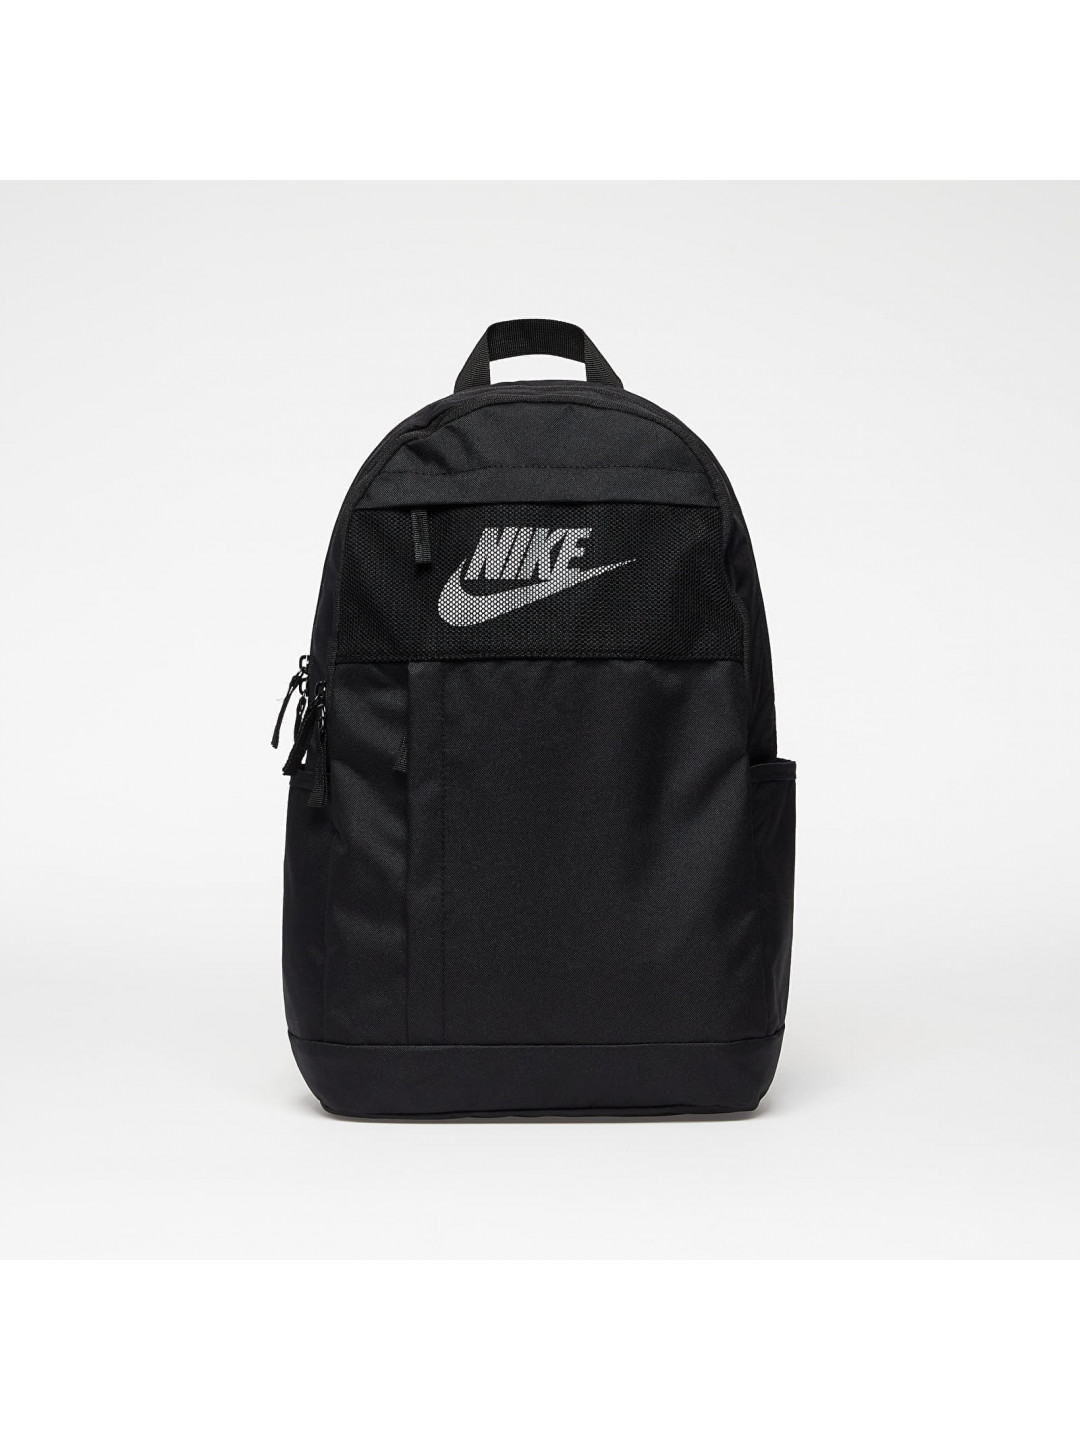 Nike Backpack Black Black White